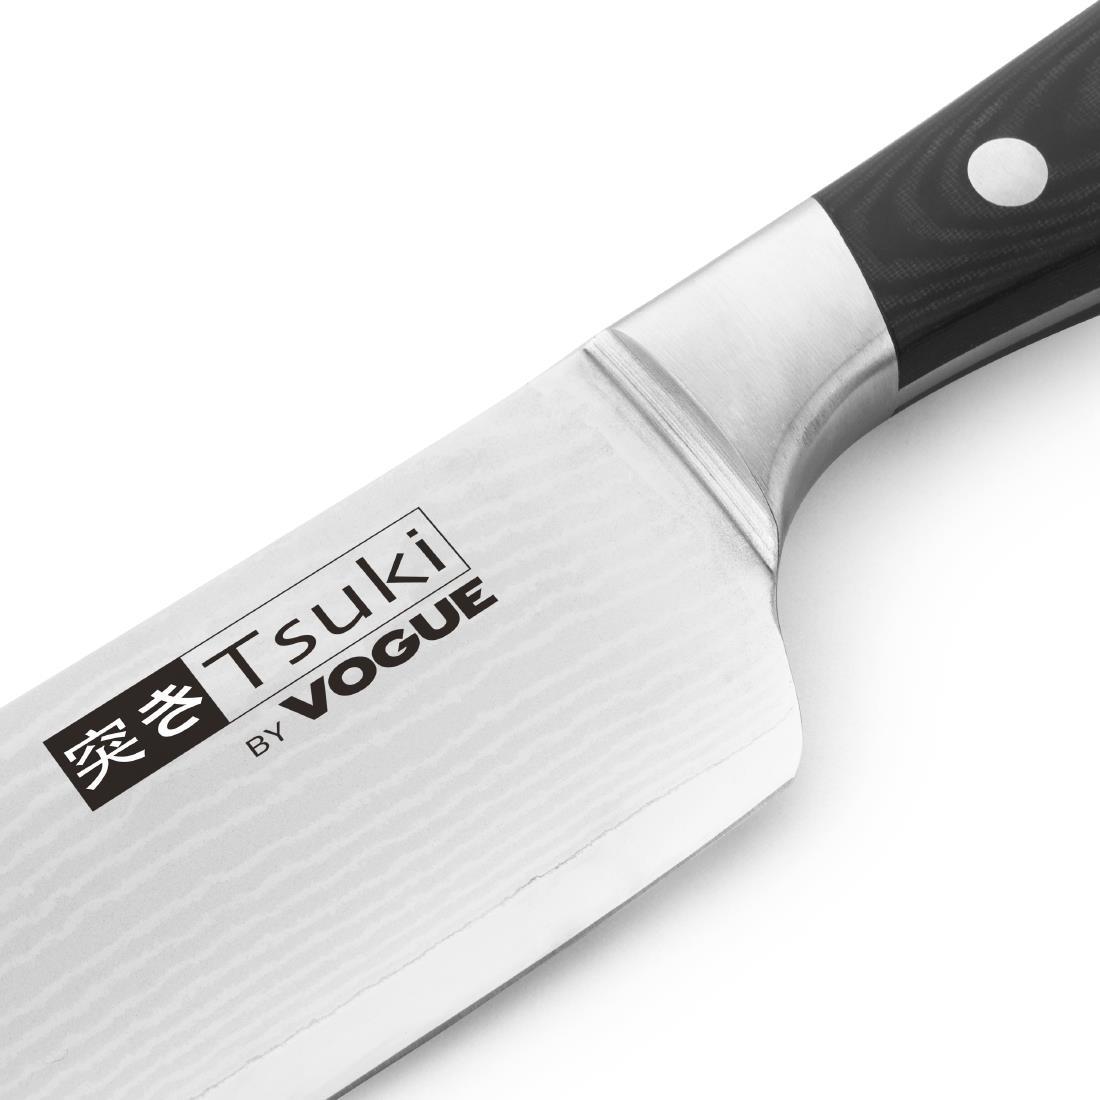 Vogue Tsuki Series 7 Santoku Knife 18cm - CF844  - 3